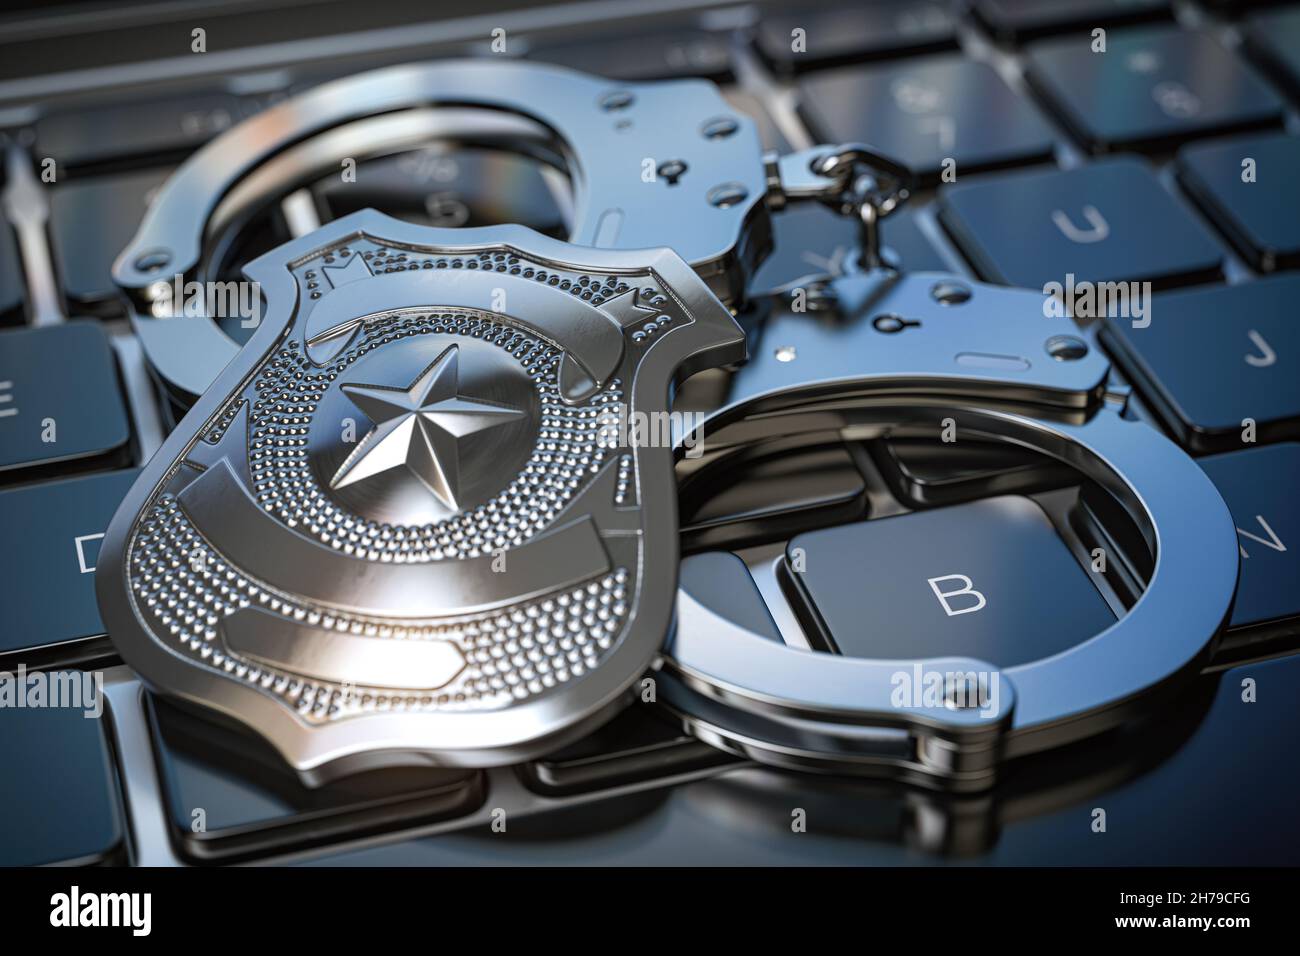 Cyber police et Internet crime concept.Menottes et badge de police sur le clavier de l'ordinateur.illustration 3d Banque D'Images